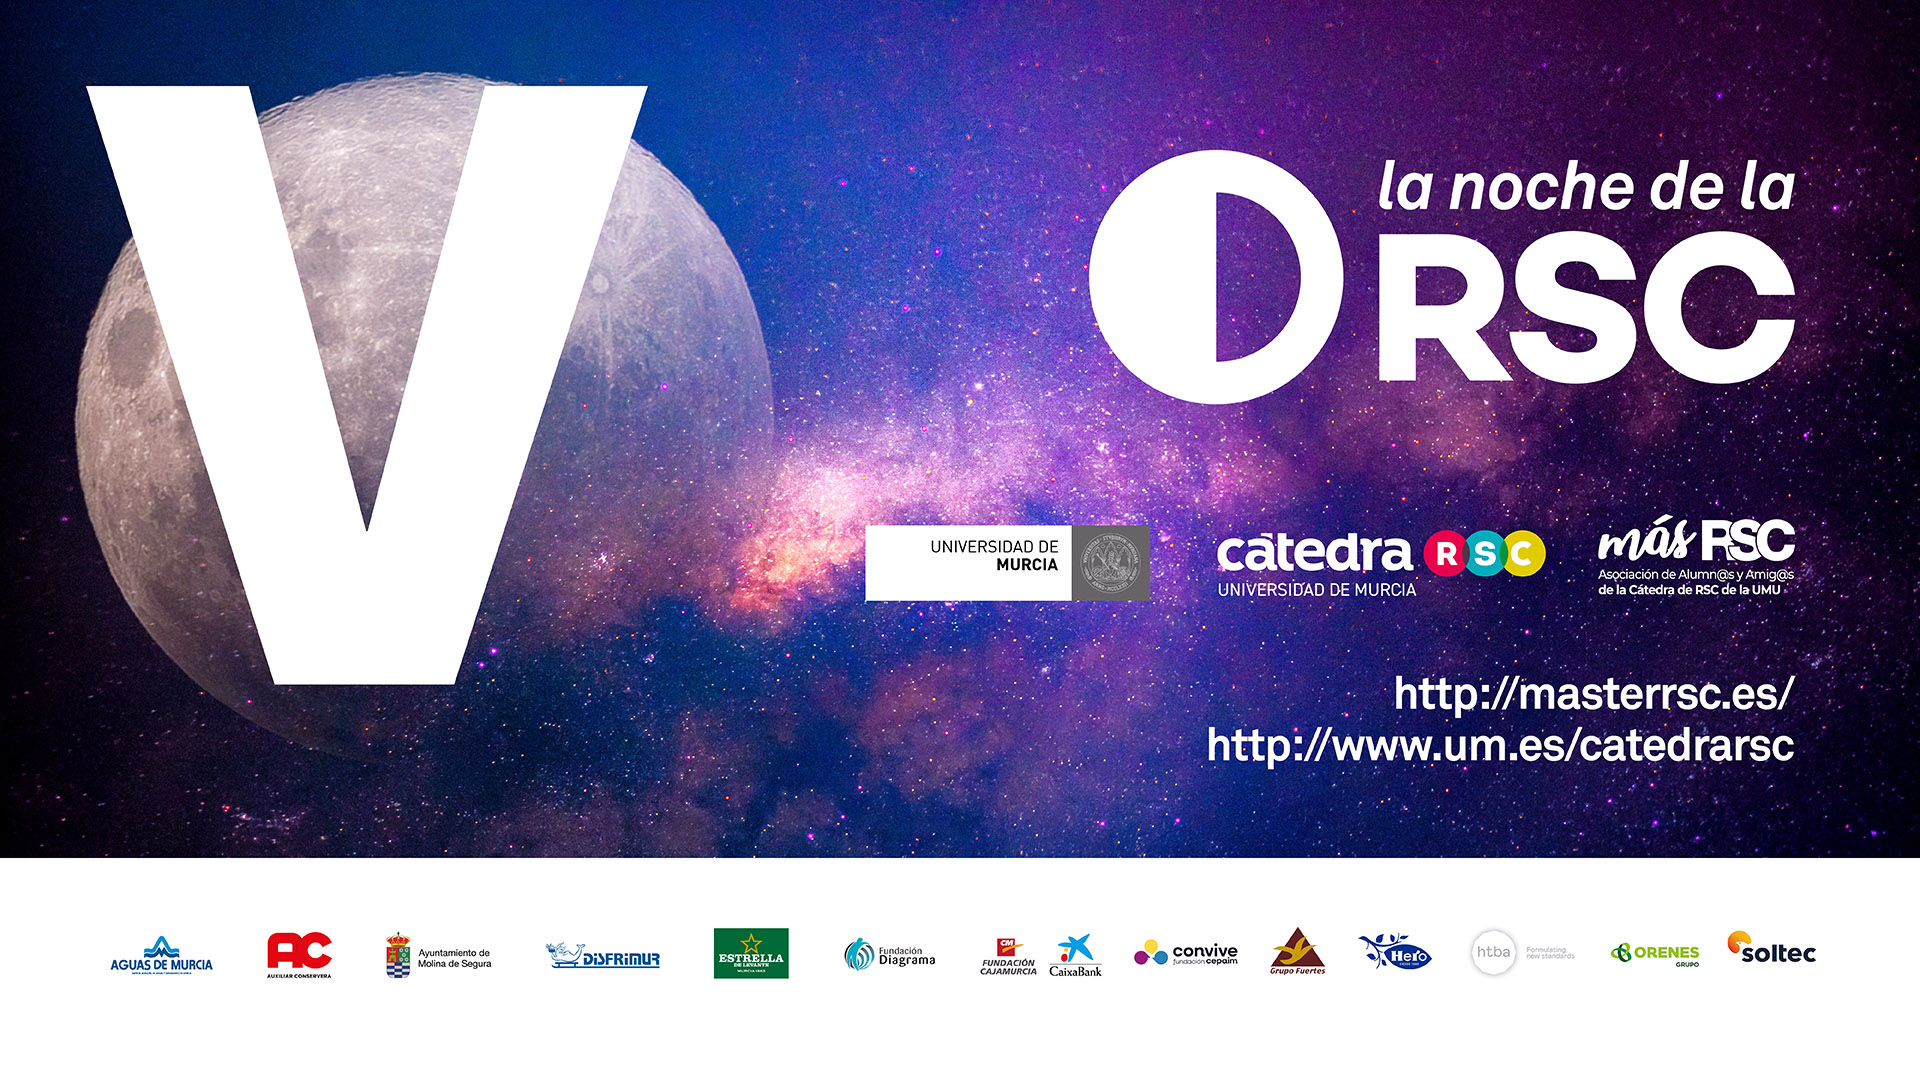 V edición de la Noche de la RSC de la Universidad de Murcia, organizada por la Cátedra RSC